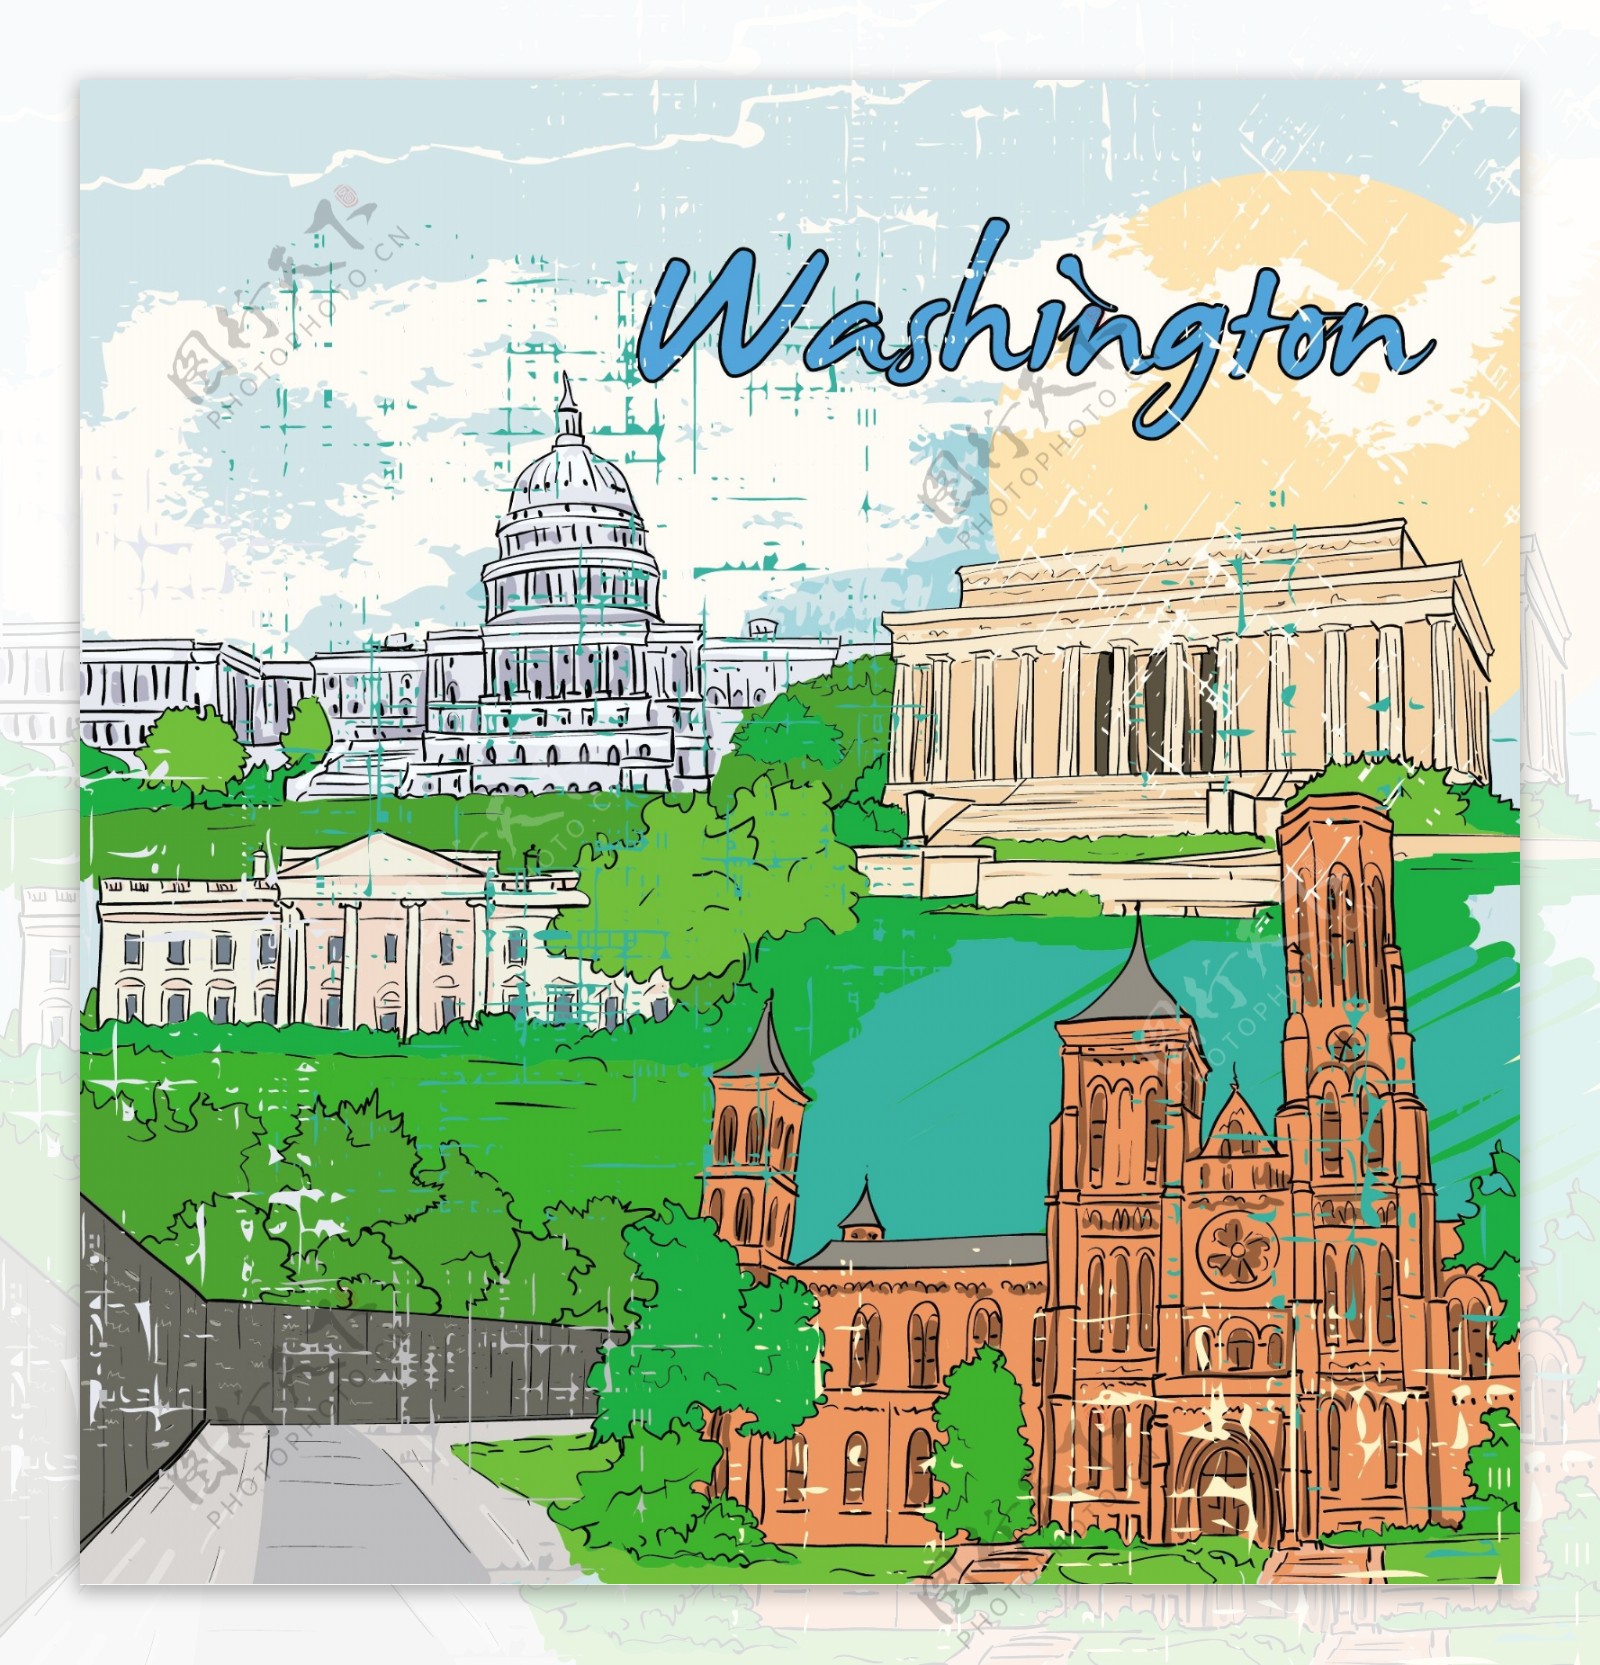 华盛顿的涂鸦矢量插画